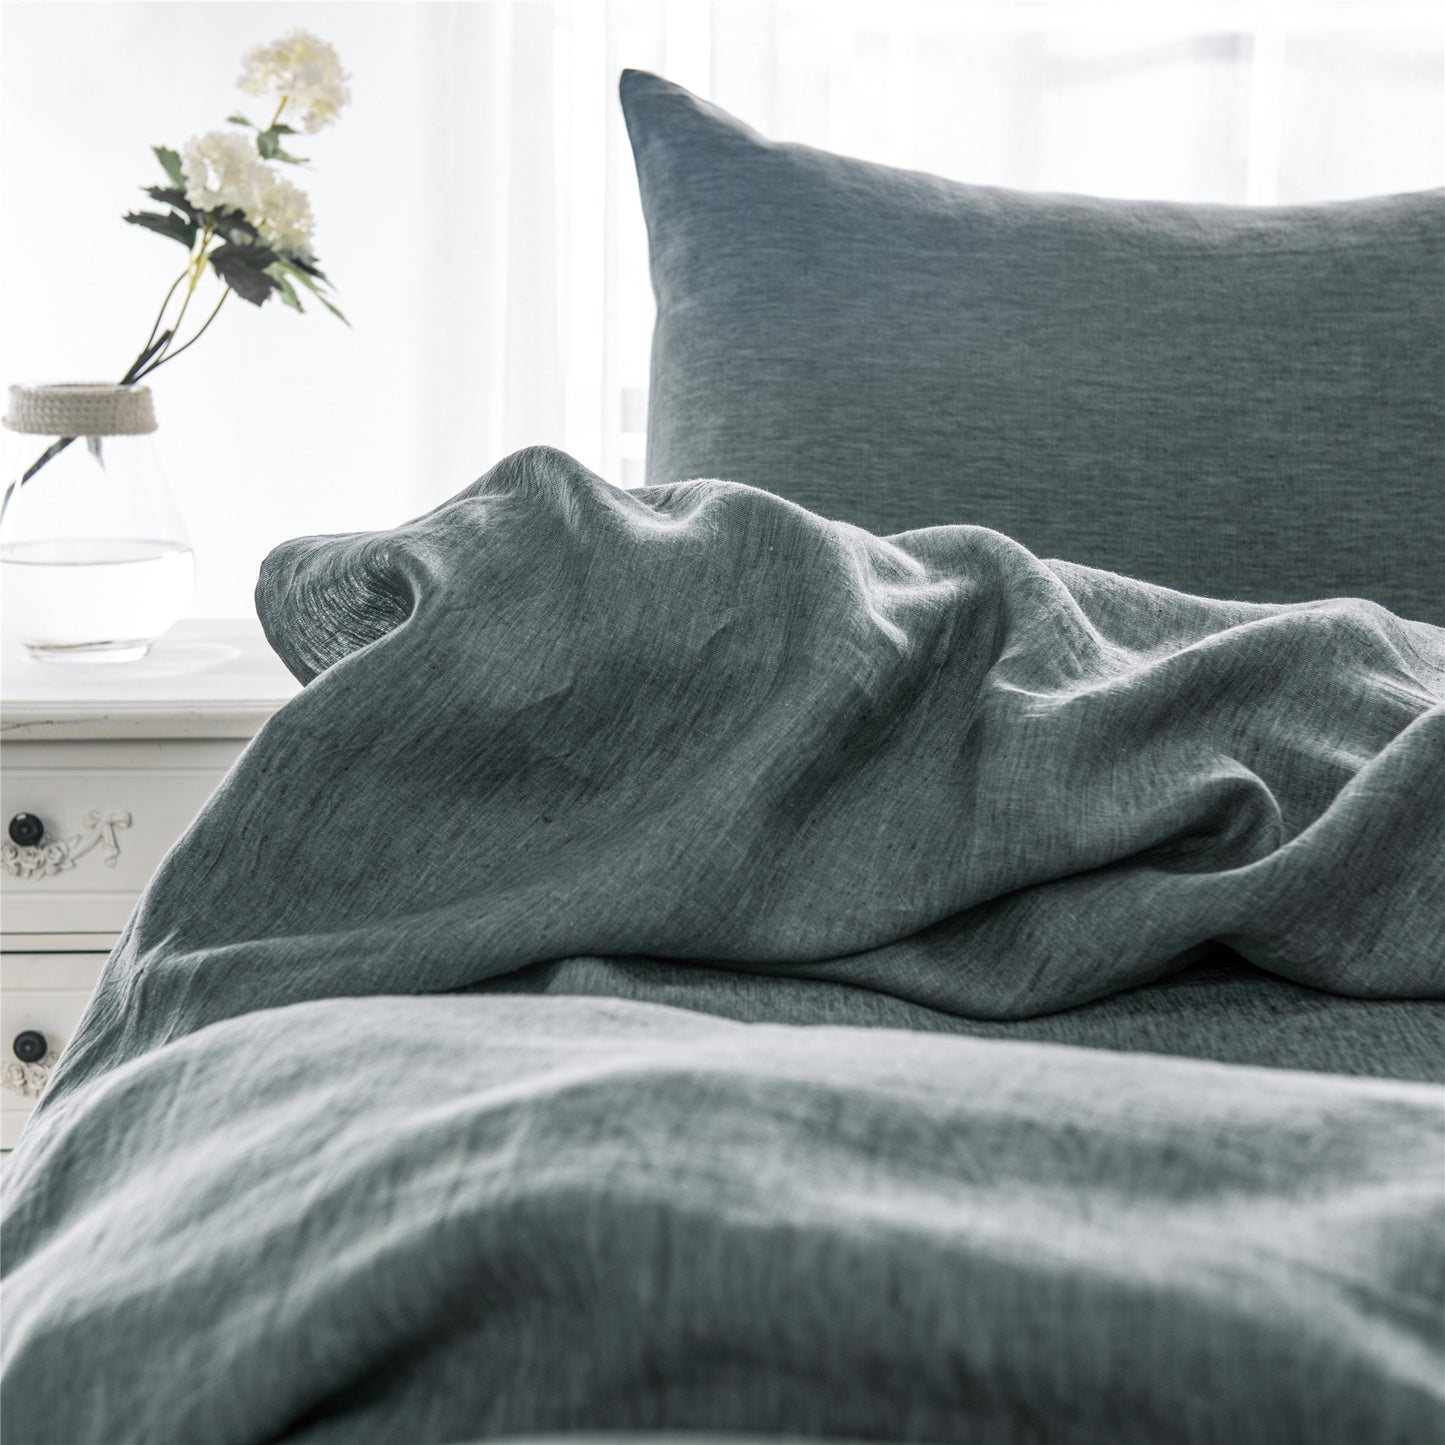 Basic Linen Pillowcases for bedroom decor in USA